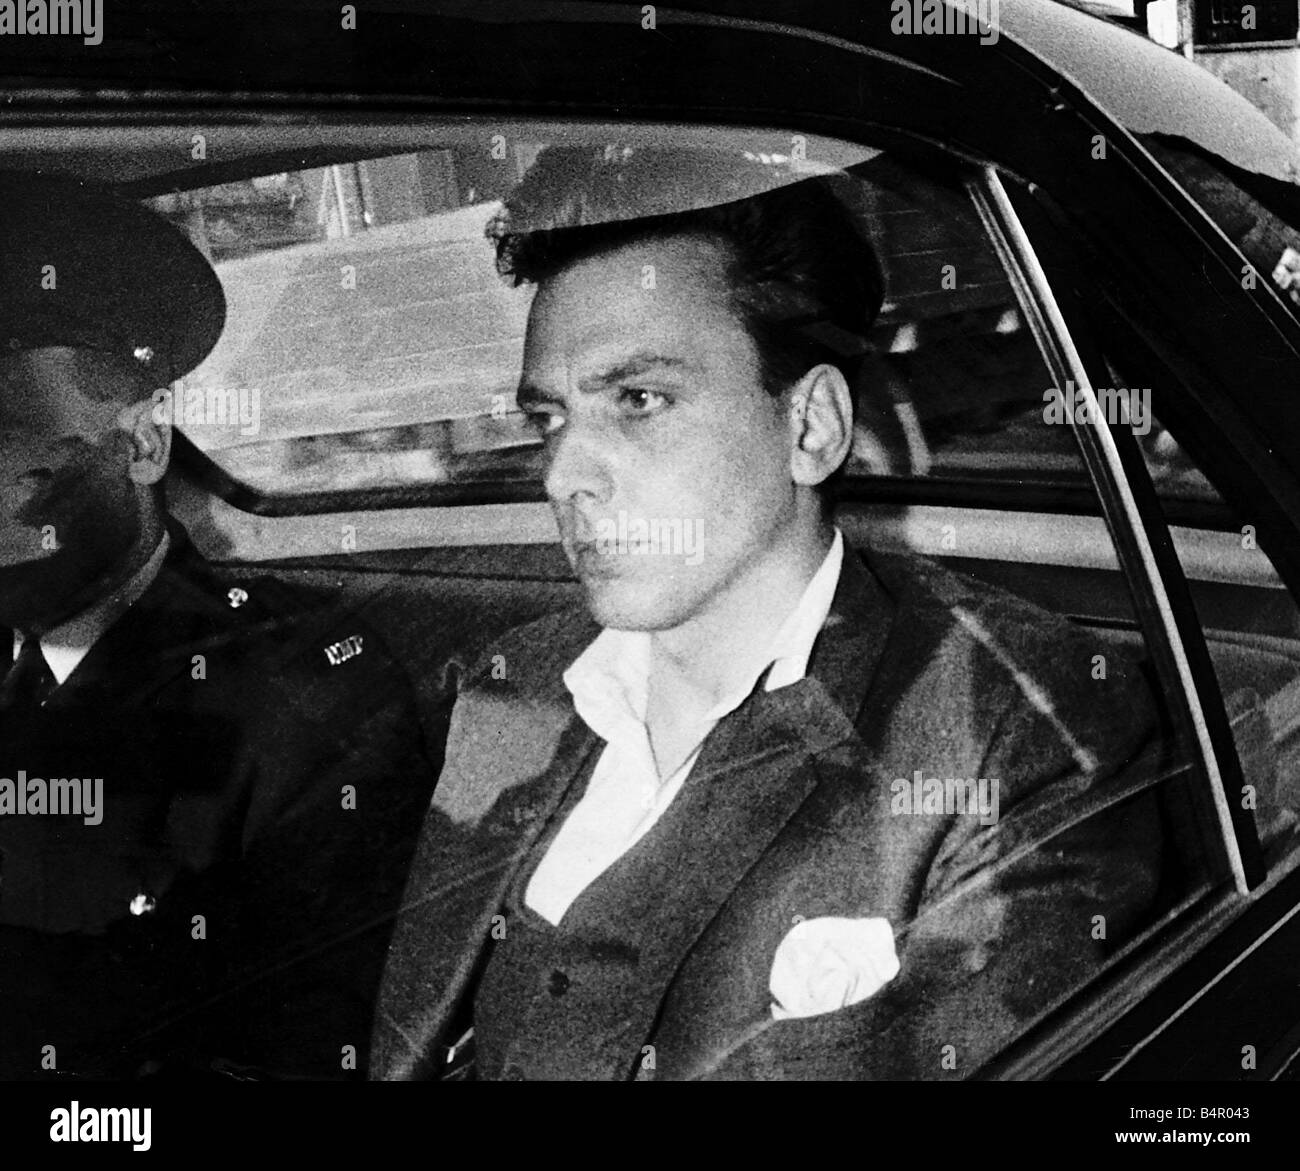 Ian Brady asesino de niños sentados en el coche de la policía disparo a la cabeza el asesinato el 6 de mayo de 1966 Foto de stock